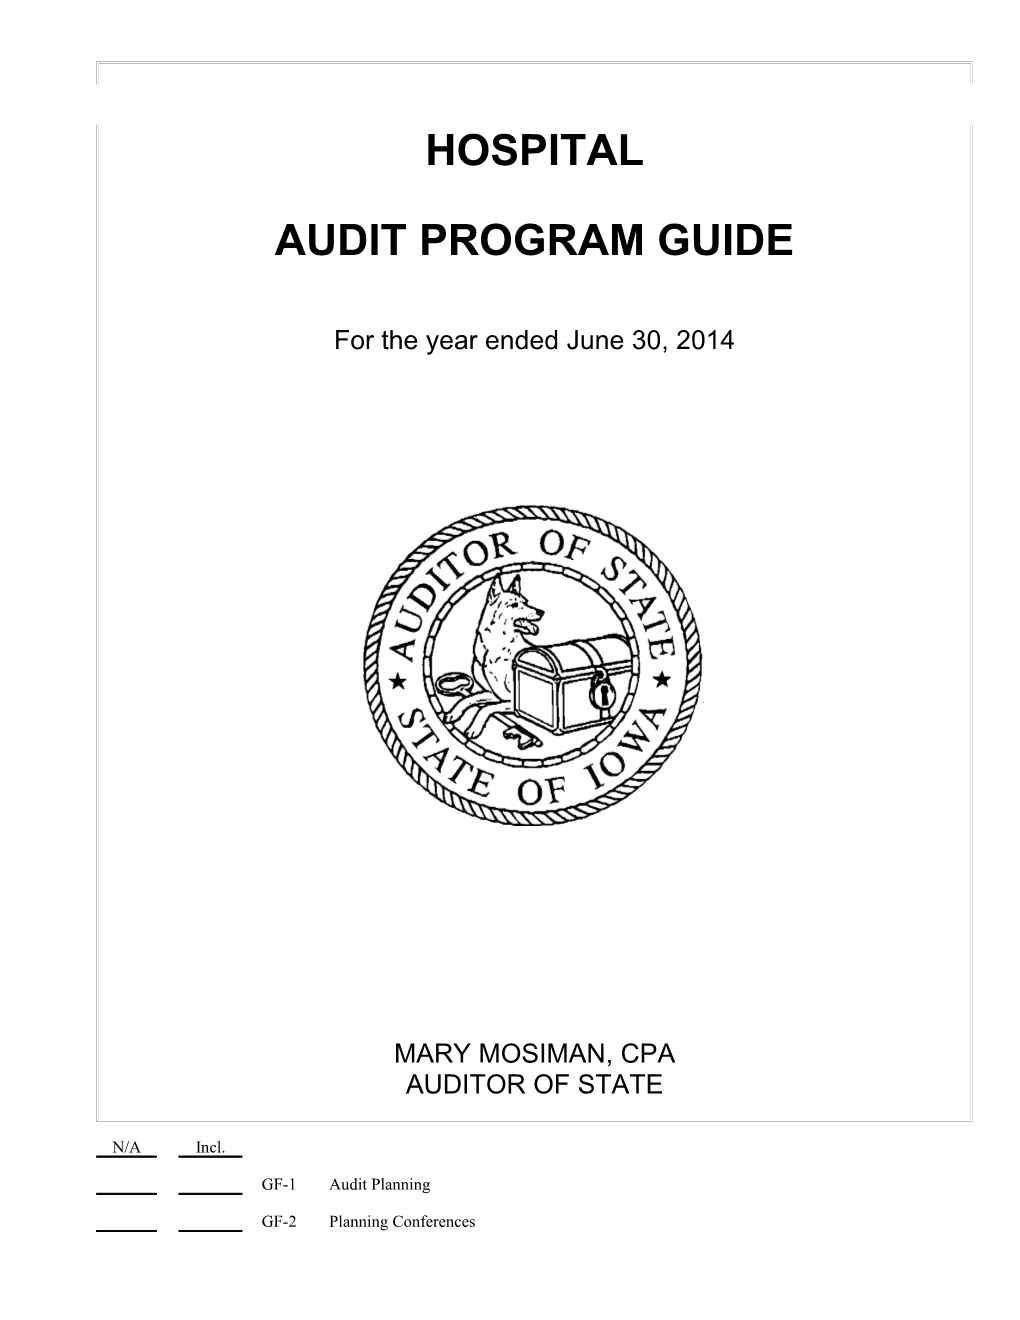 Audit Program Guide